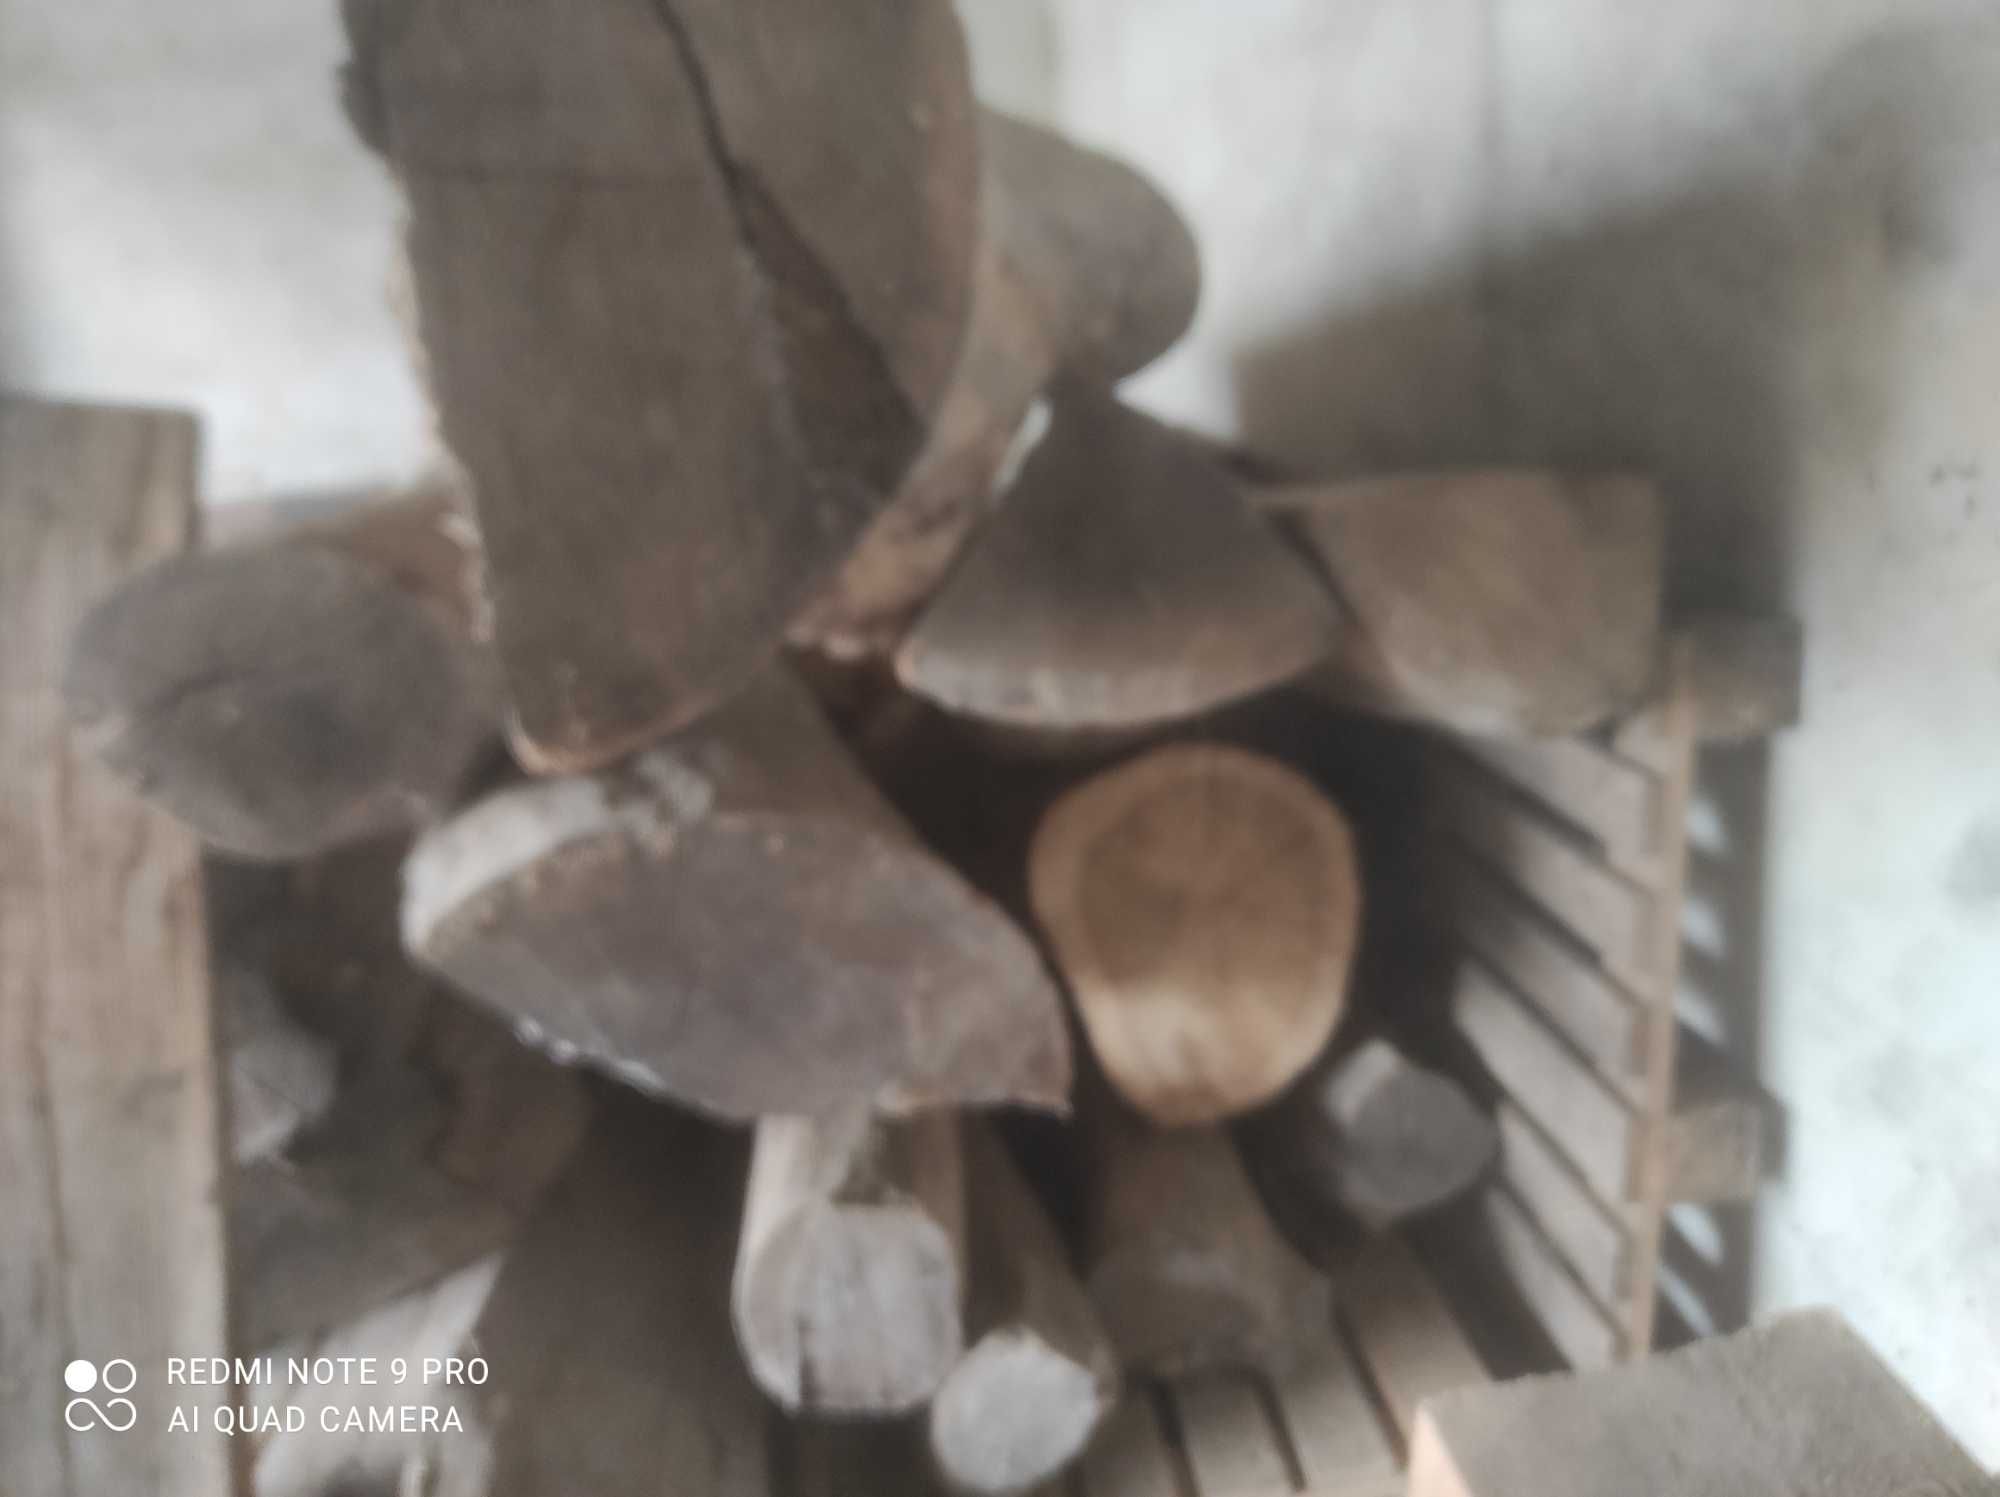 Drewno Dąb do przetarcia/na opał